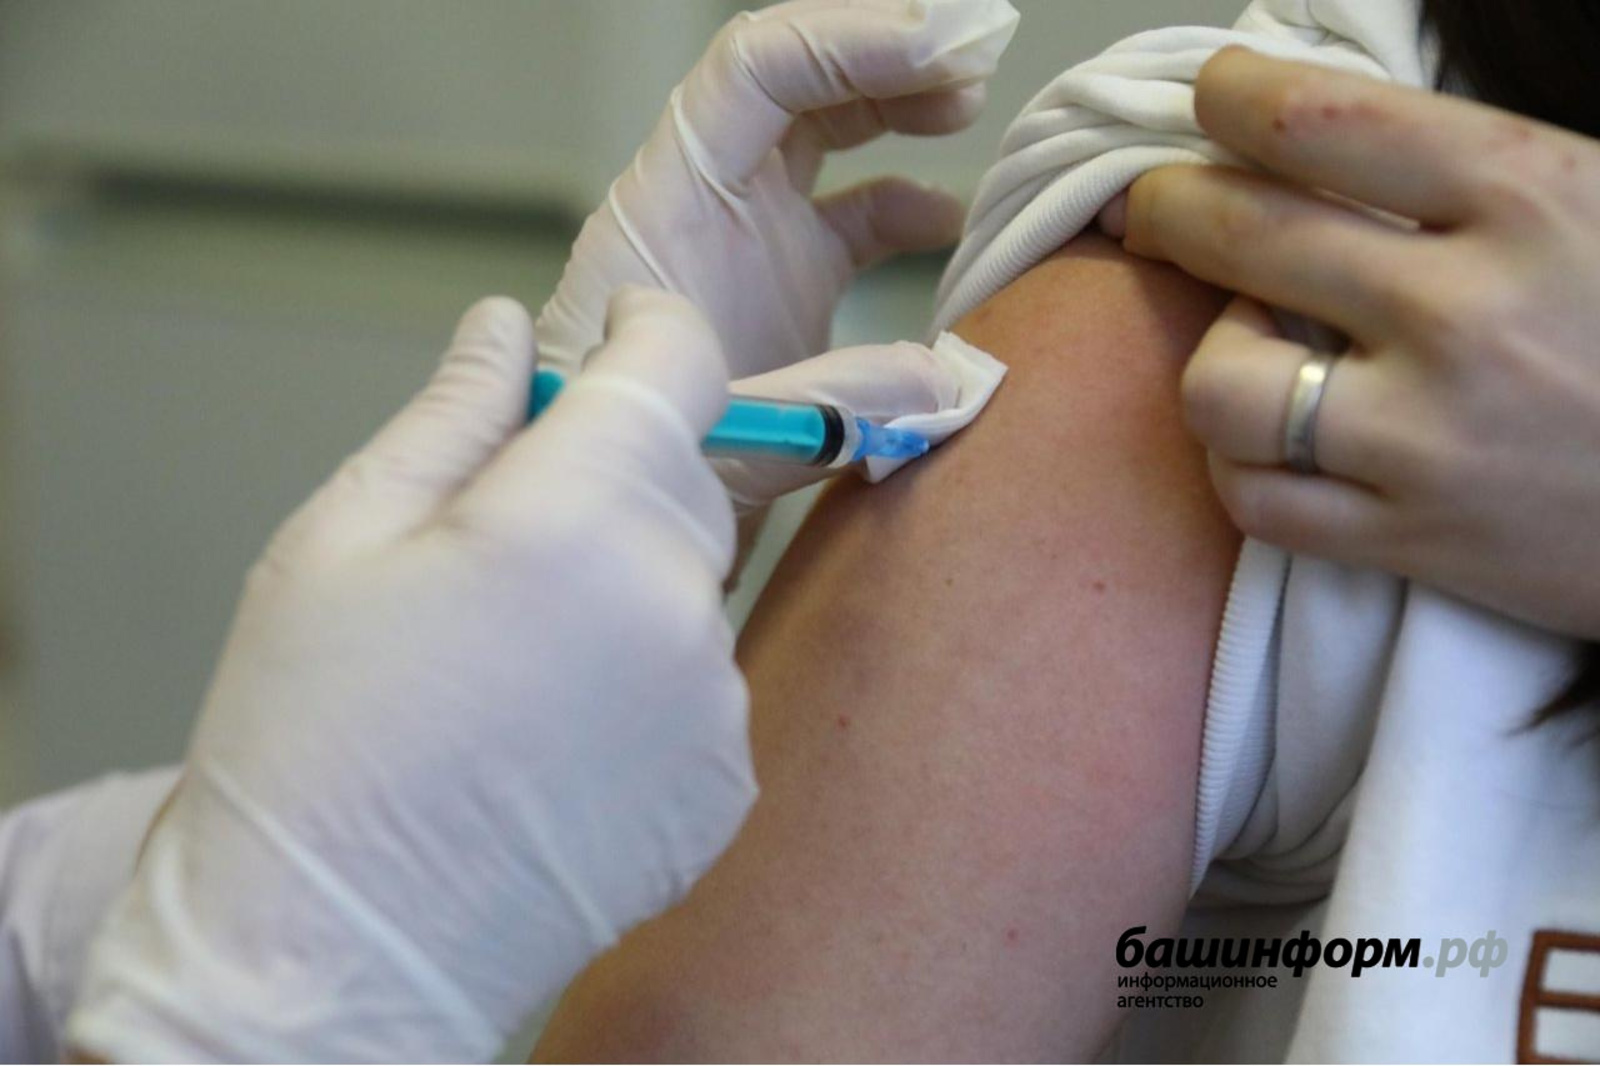 Башкортостане продолжается массовая вакцинация от коронавируса